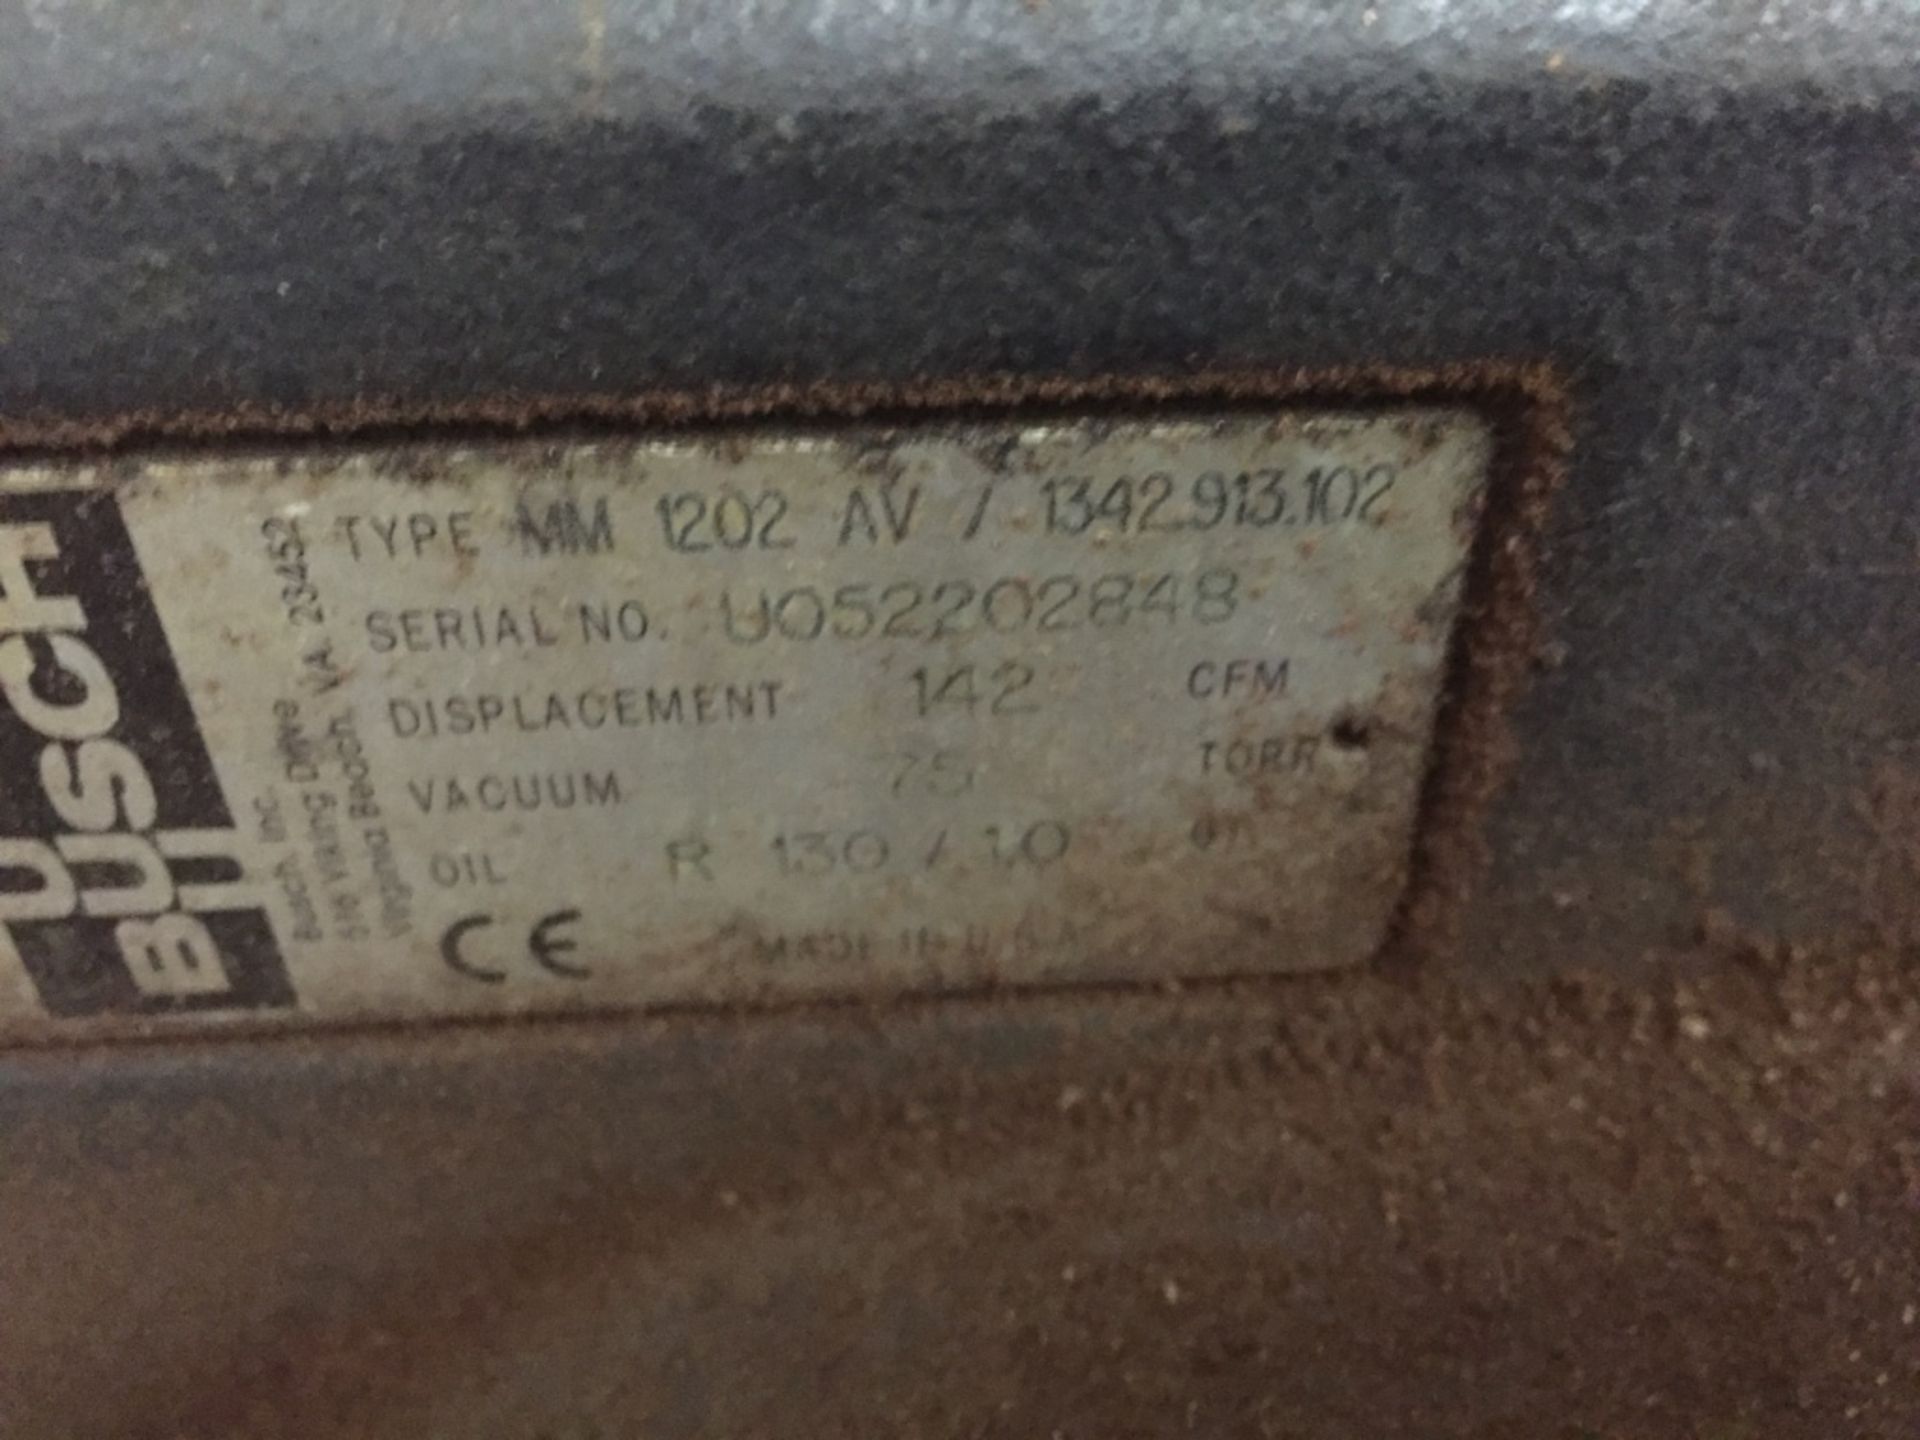 Busch Vaccum Pump Type MM 1202 AV/ 1342913102 S/N UO52202848 - Image 2 of 3